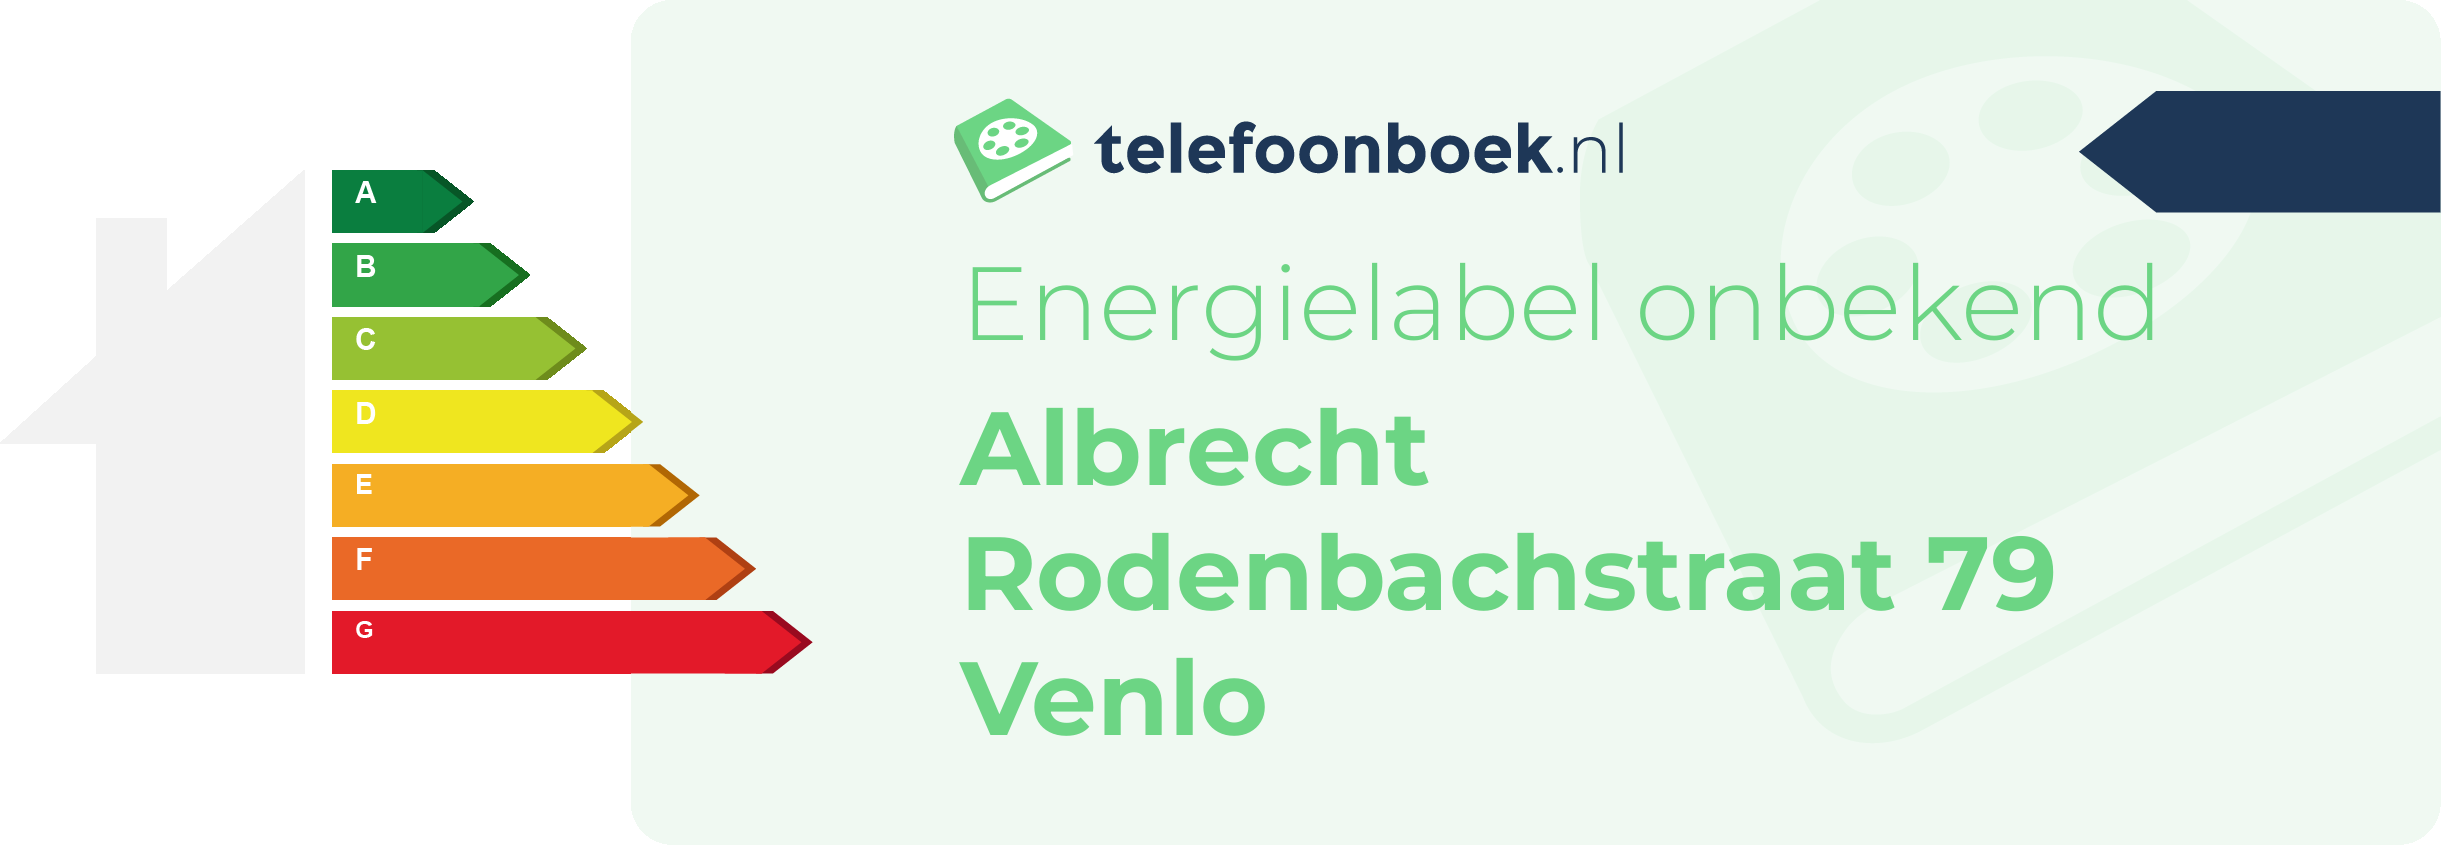 Energielabel Albrecht Rodenbachstraat 79 Venlo